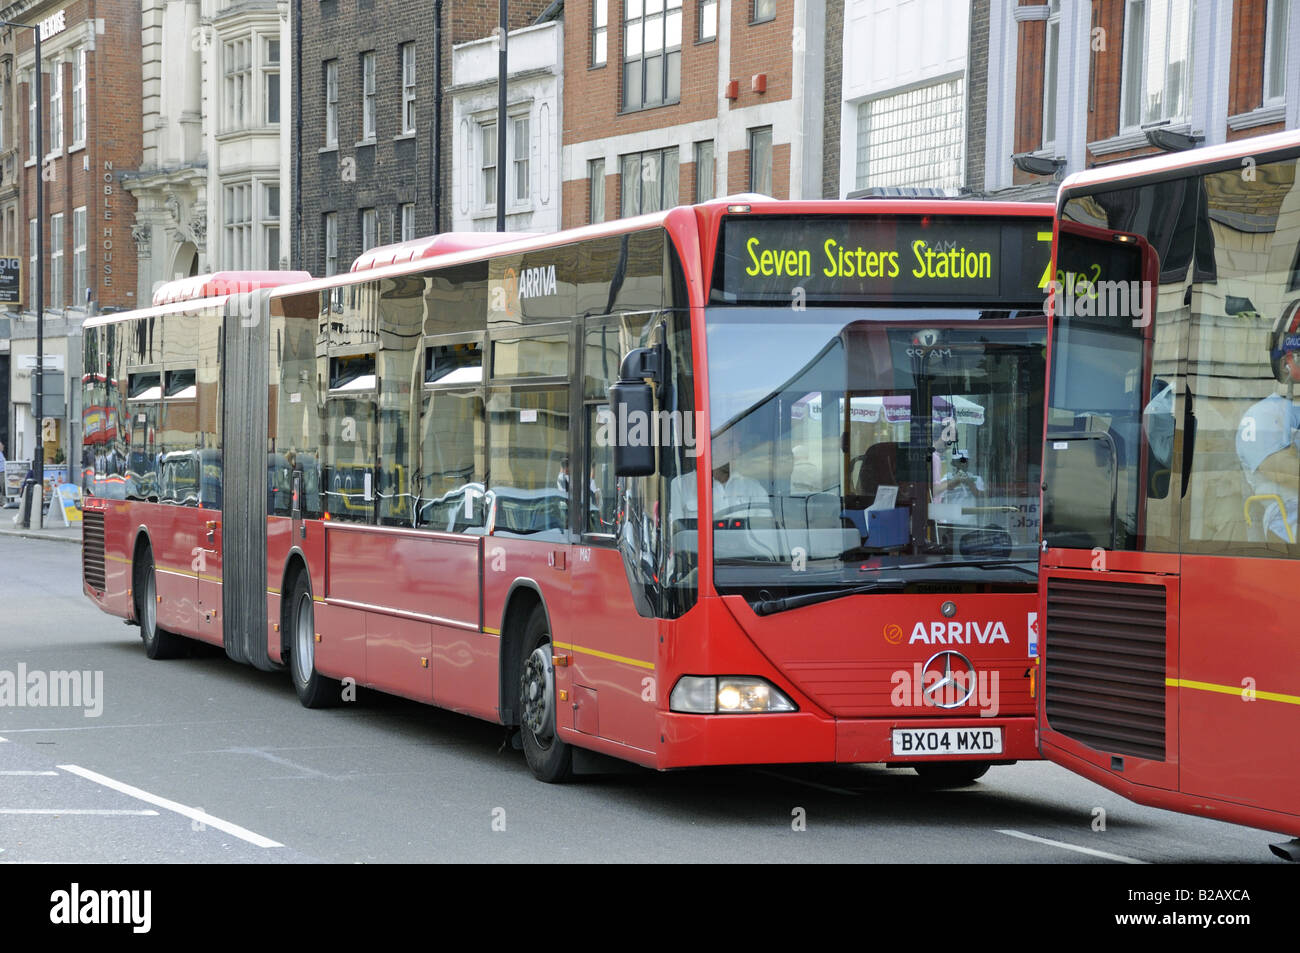 Bus Bendy Angel Islington Londres UK Banque D'Images